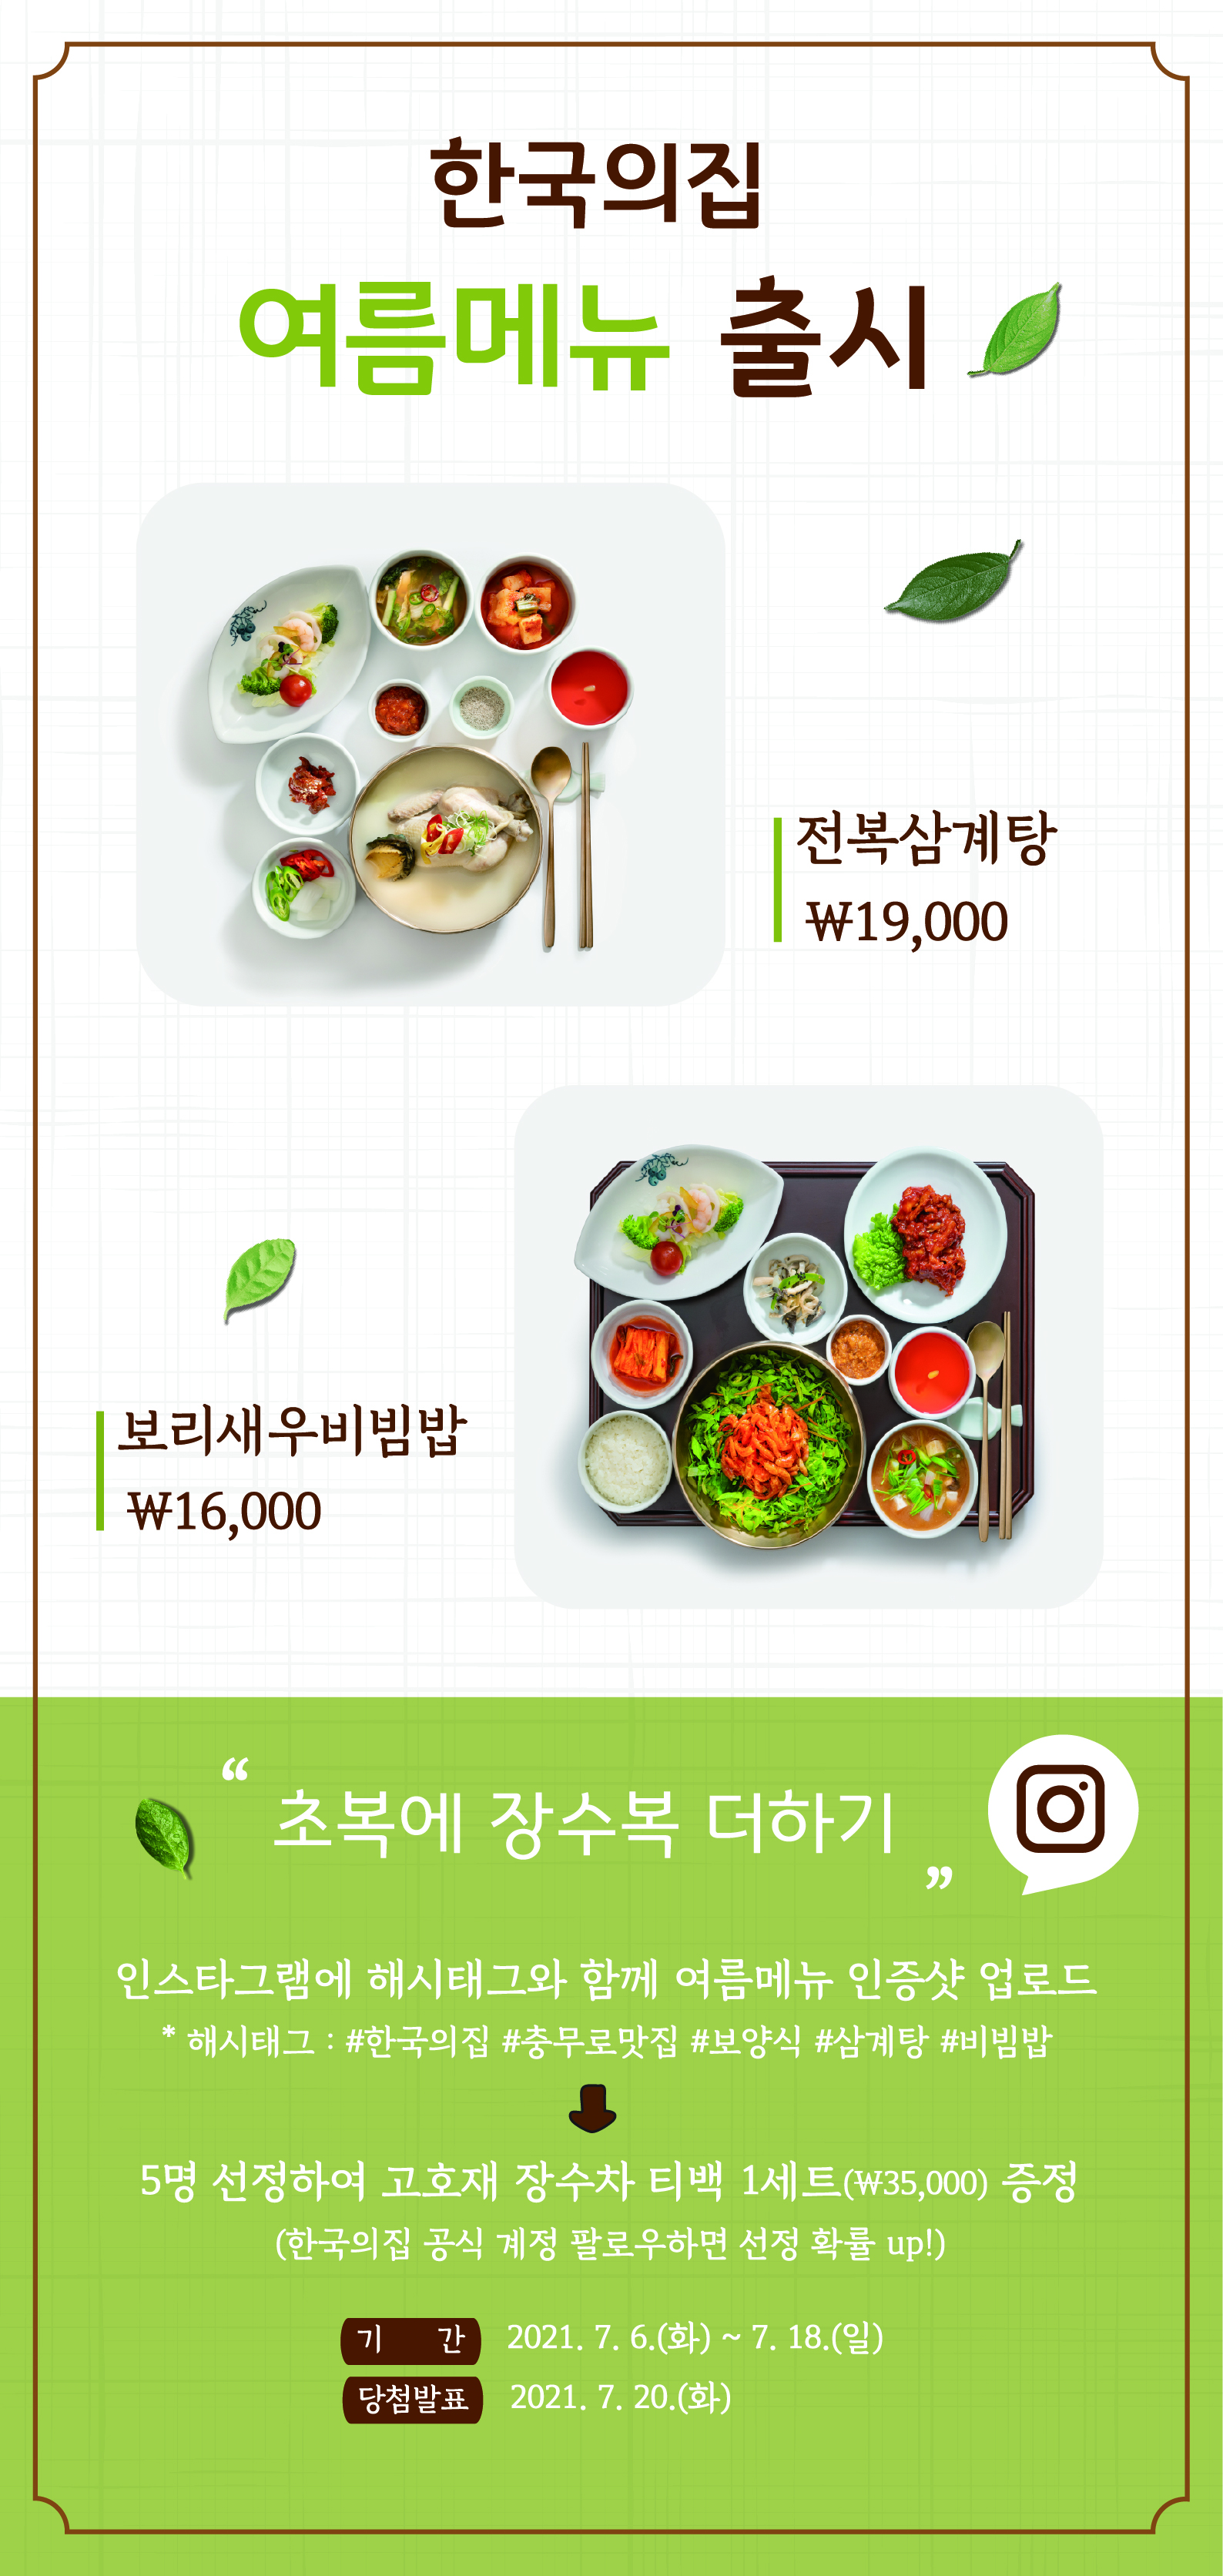 한국의집 여름메뉴 출시